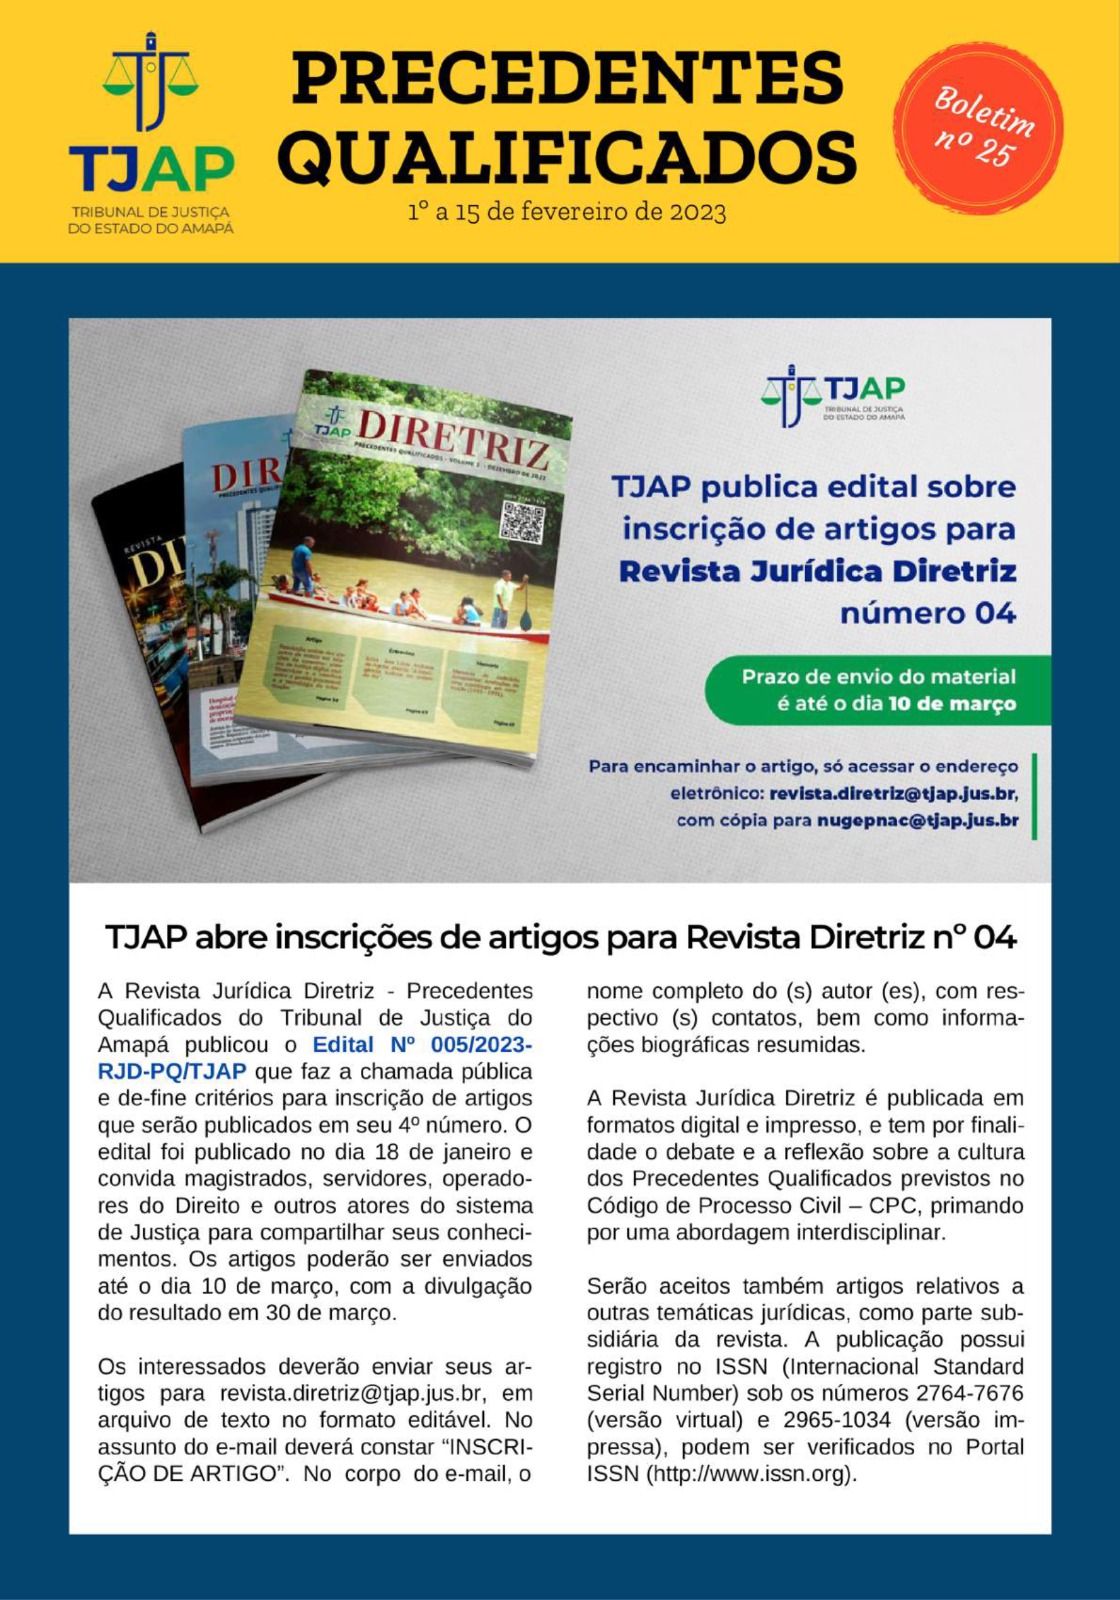 Capa do Boletim de Precedentes número 25 com o subtítulo "TJAP abre inscrições de artigos para Revista Diretriz nº 04"